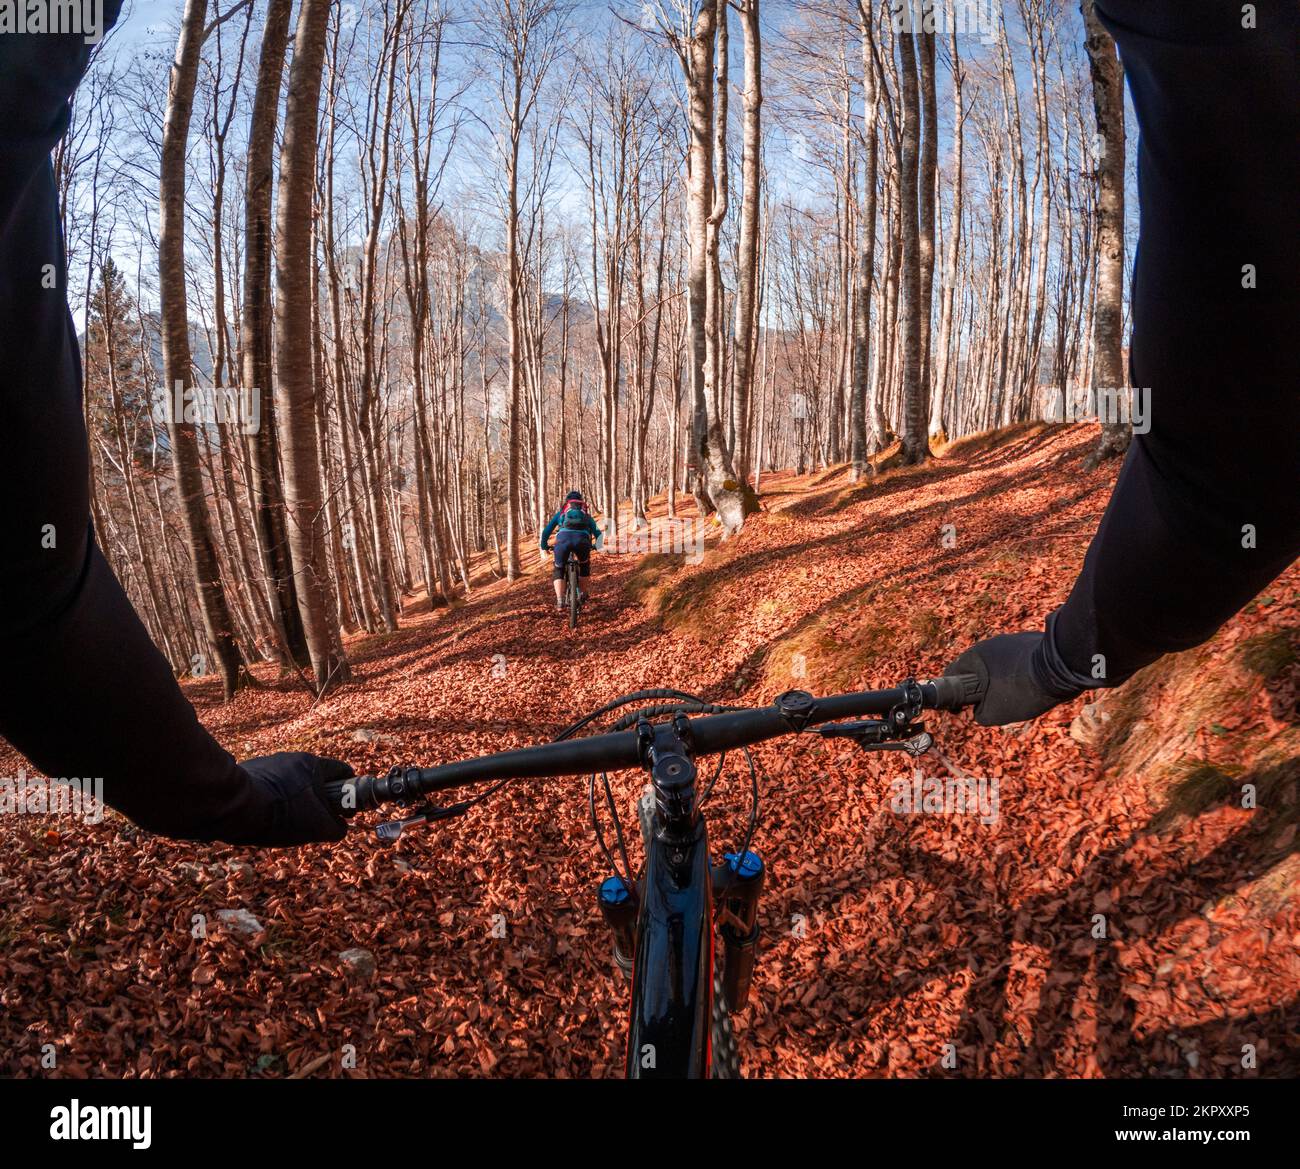 Persönliche Perspektive einer Person, die den Lenker eines Fahrrads hält, und einer Mountainbikerin, die im Herbstlaub in Italien vor sich fährt Stockfoto